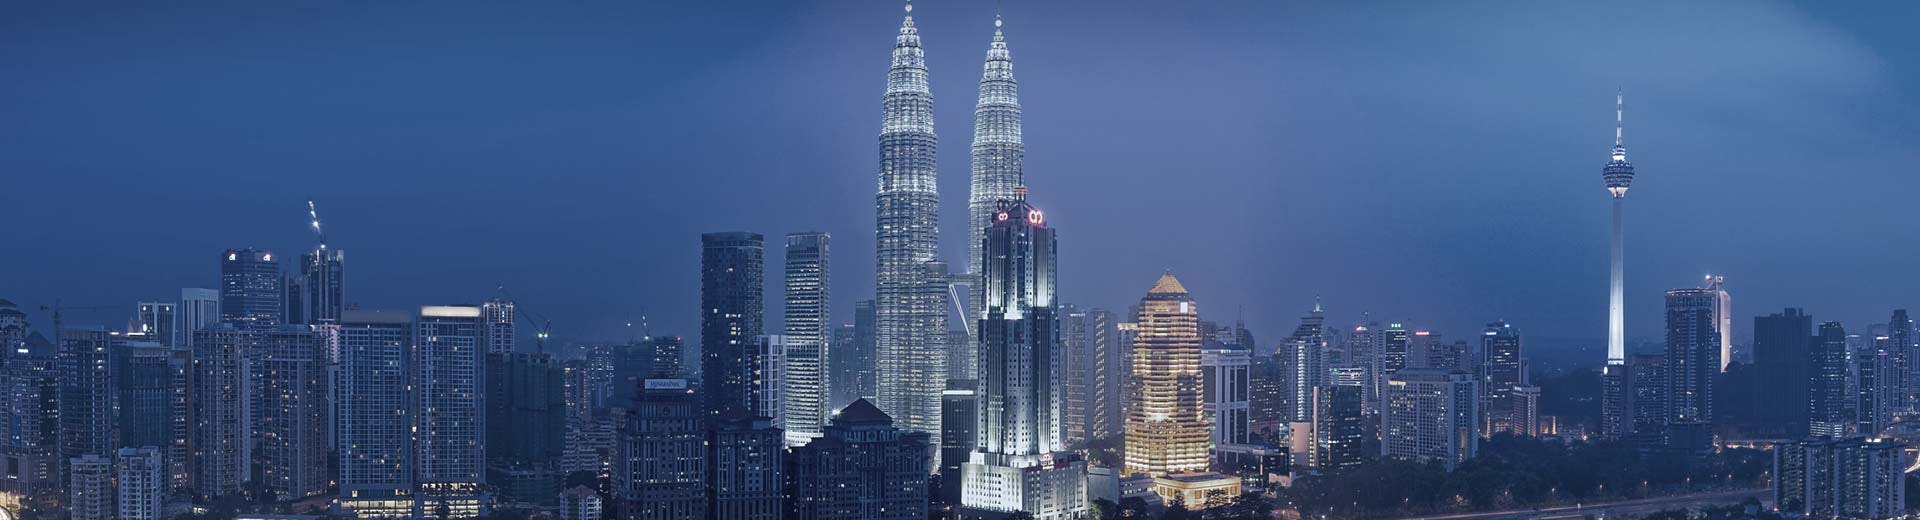 Die drohenden Zwillingstürme von Kuala Lumpur hellen den dunklen Himmel hinauf.